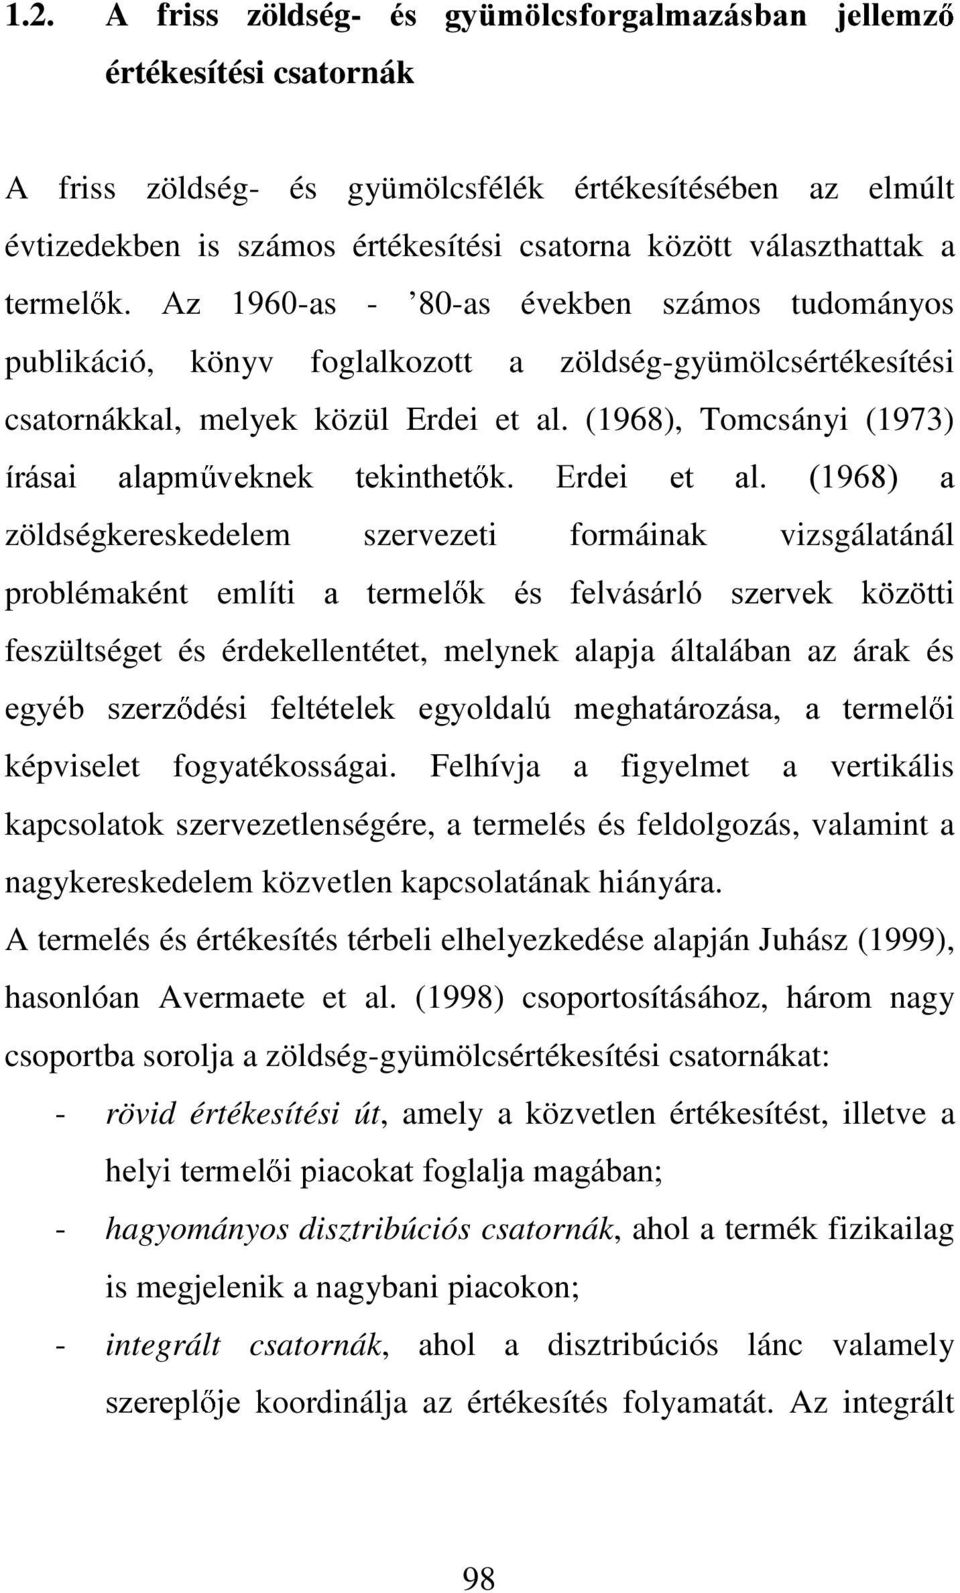 (1968), Tomcsányi (1973) tuivdl DODSP YHNQHN WHNLQWKHW N (UGHL HW DO D zöldségkereskedelem szervezeti formáinak vizsgálatánál problémaként emotwl D WHUPHO N pv IHOYiViUOy V]HUYHN N ] WWL feszültséget